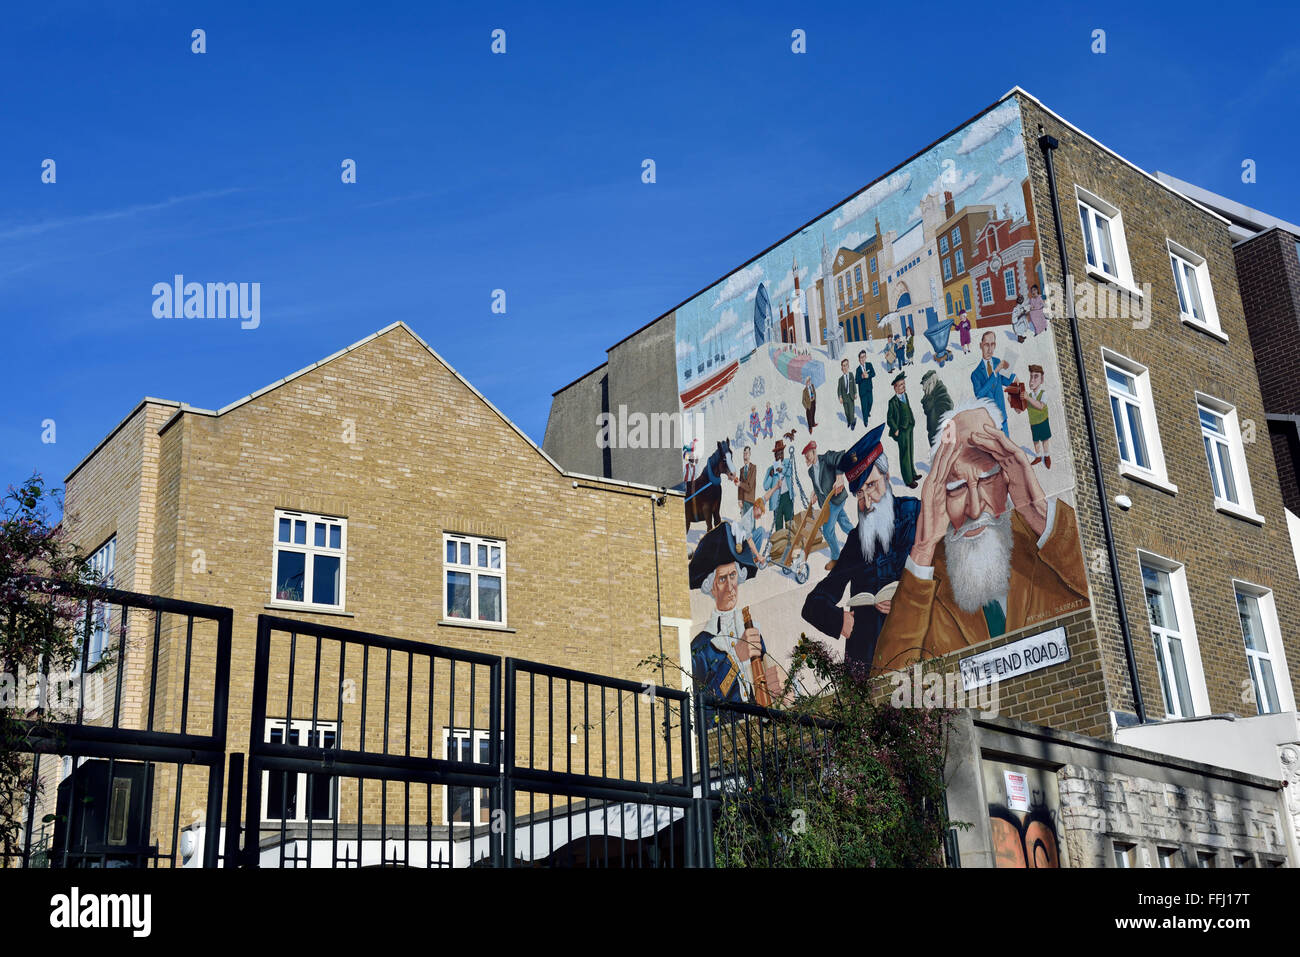 Gli edifici nel Miglio Terminano con un murale di Mychael Barratt, Mile End Road, London Borough of Tower Hamlets Inghilterra Gran Bretagna UK. Solo editoriale Foto Stock